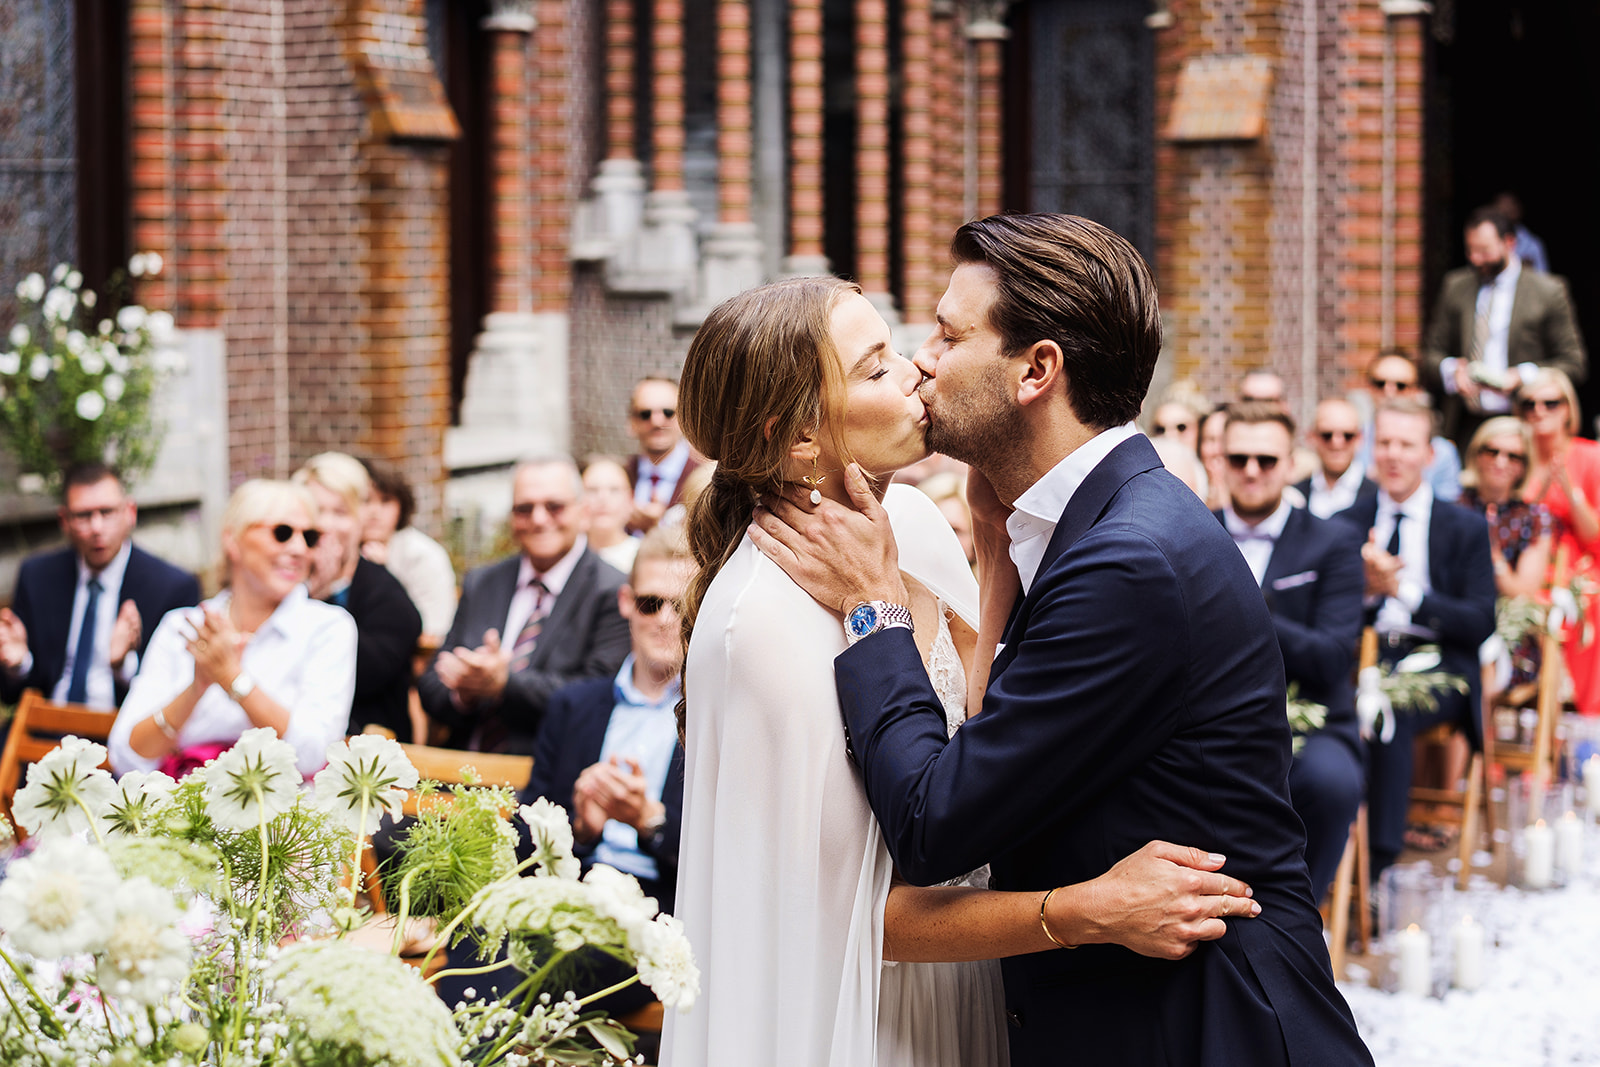 RUUDC Fotografie - eerste kus van het bruidspaar tijdens trouwceremonie